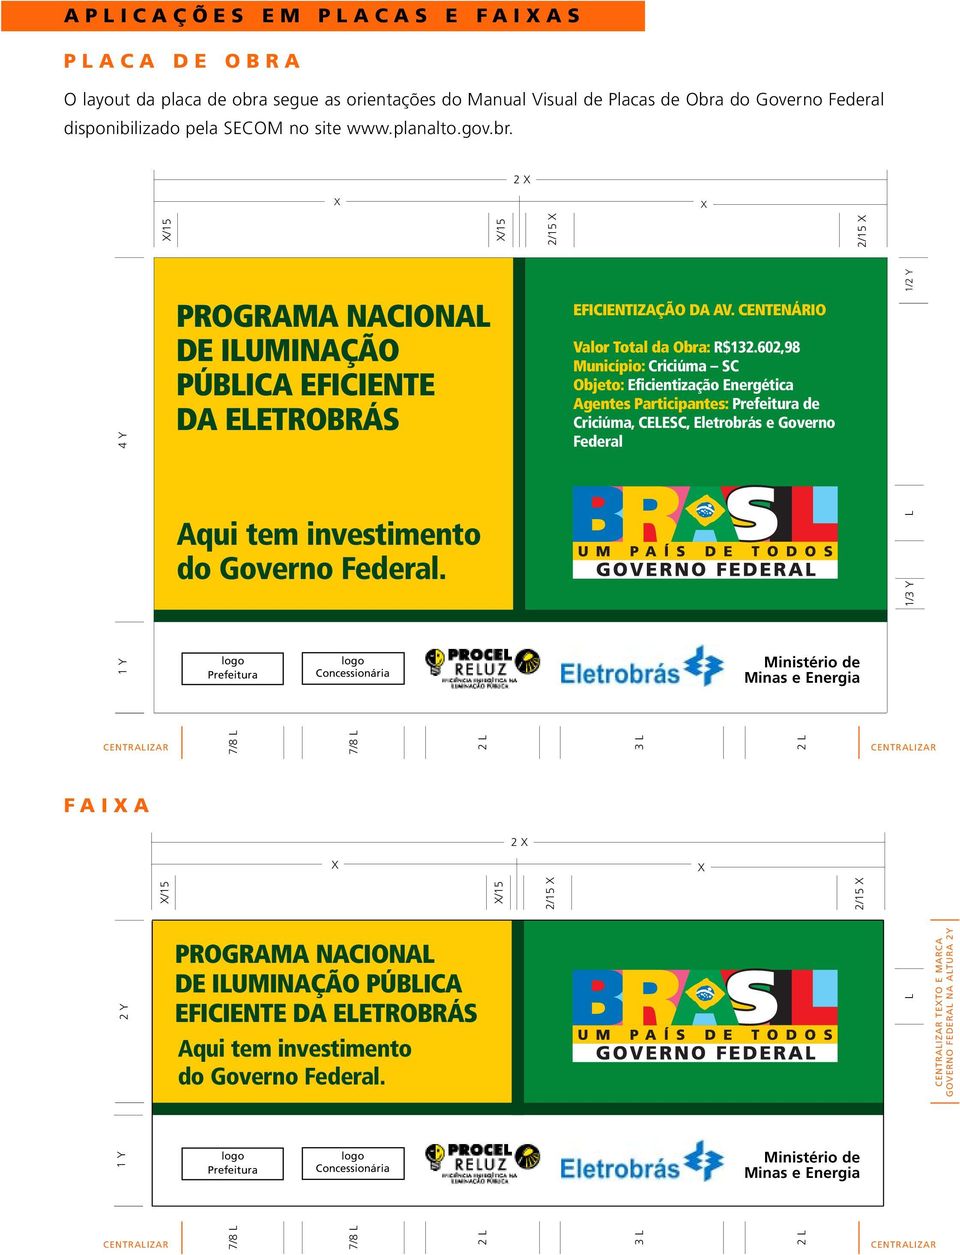 do Governo Federal disponibilizado pela SECOM no site www.planalto.gov.br.